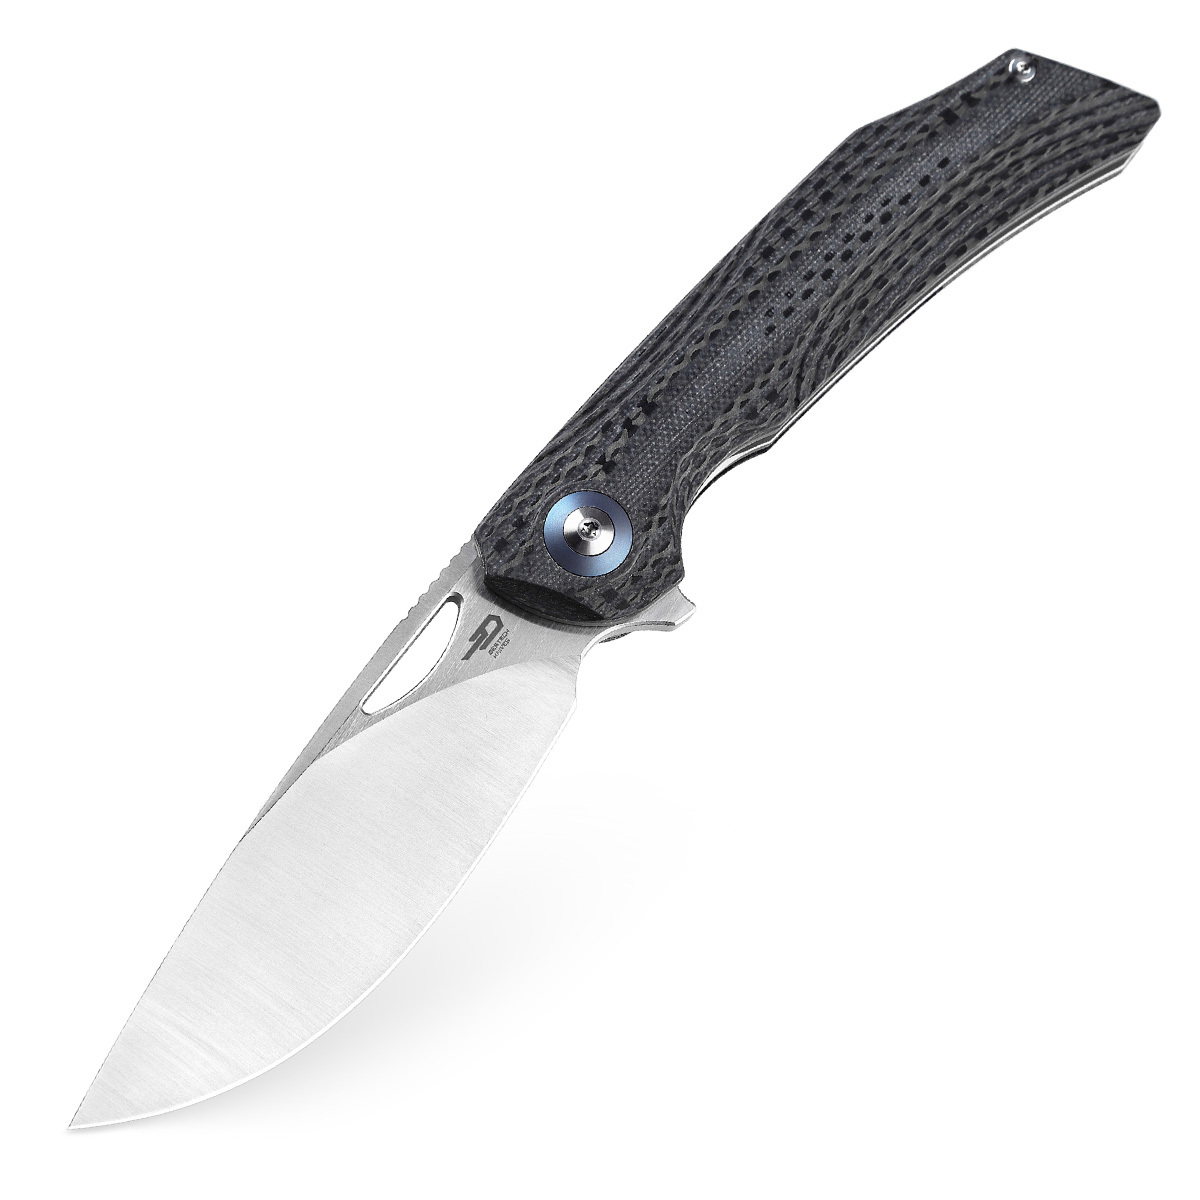 Складной нож Bestech Falko, сталь 154CM, рукоять G10/Carbon fiber